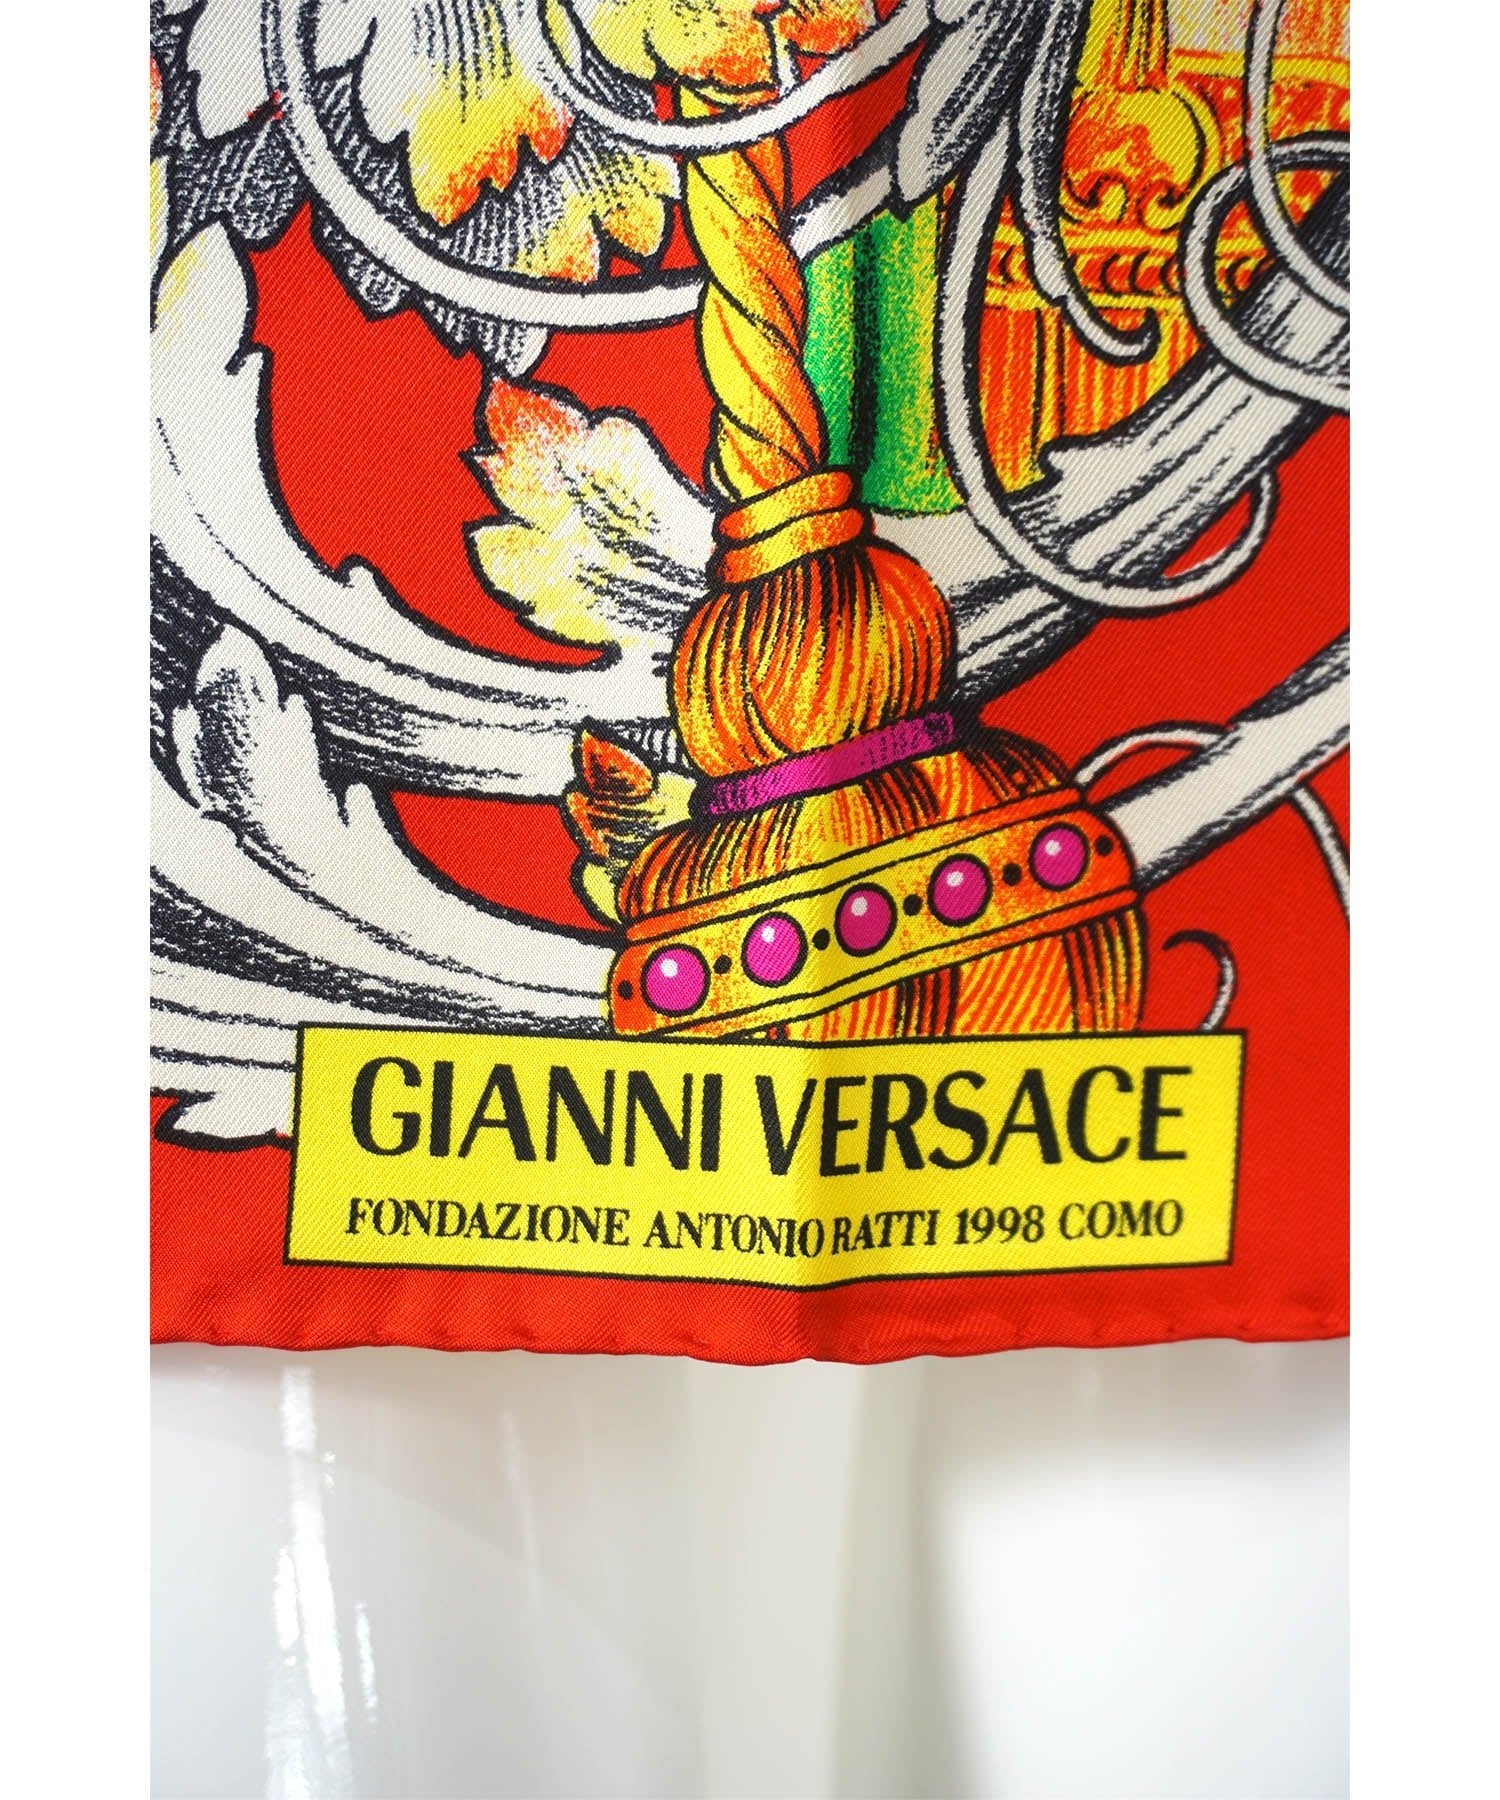 Gianni Versace Rare Vintage 1998 Fondazione Antonio Ratti Silk Scarf